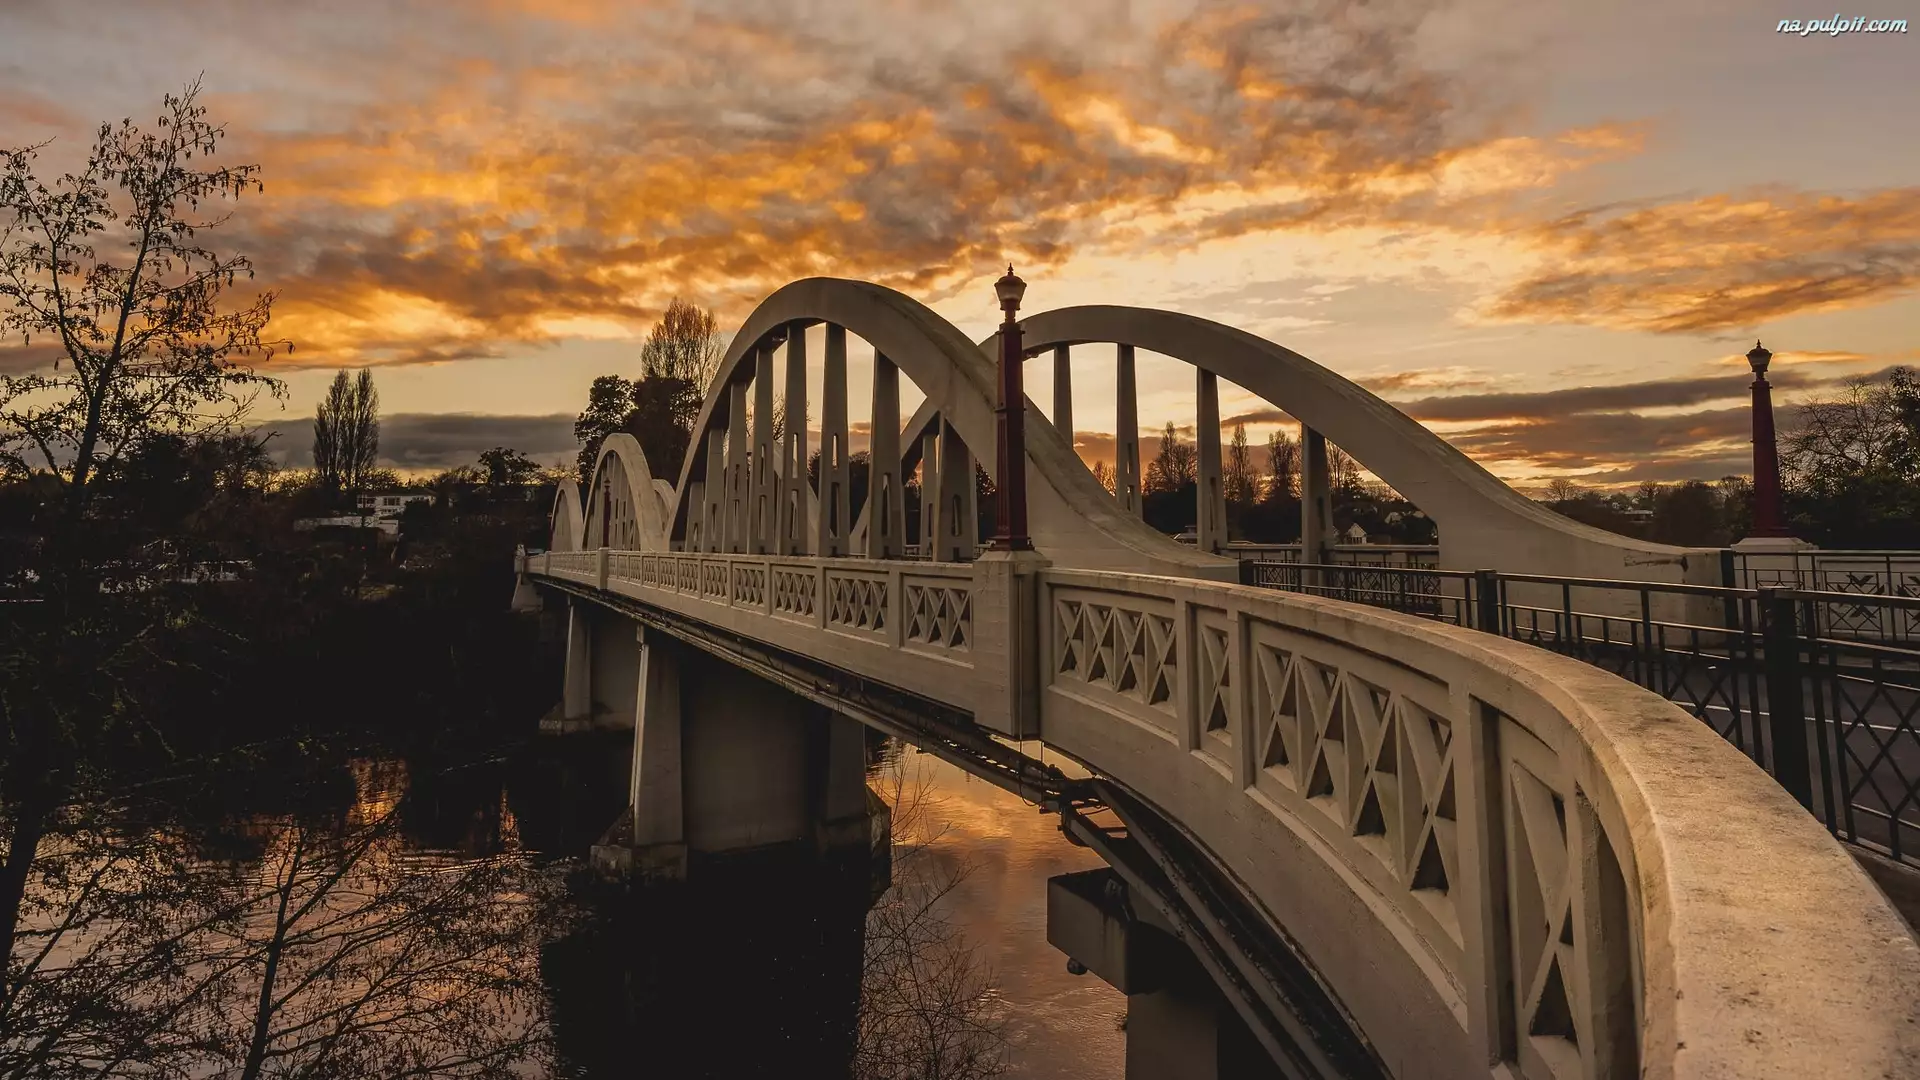 Claudelands Bridge, Nowa Zelandia, Most, Rzeka Waikato, Hamilton